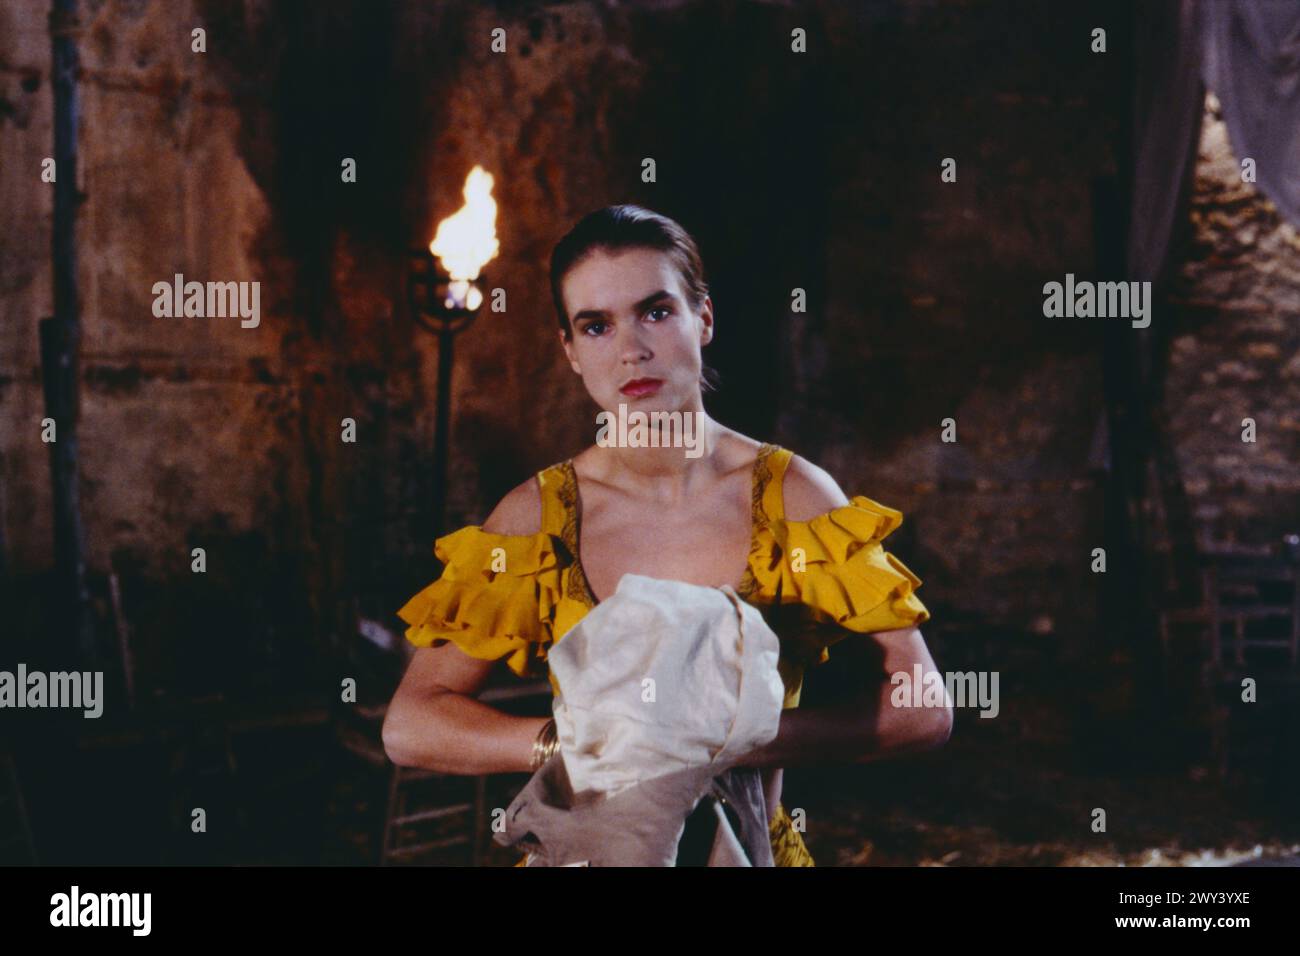 Carmen on Ice, deutscher Tanzfilm von 1990, Orchesterfassung nach der Oper Carmen von George Bizet, gedreht wurde der Eiskunstlauf-Film in der Altststadt von Sevilla, Spanien, Regie: Horant H Hohlfeld, Szene: KATARINA WITT als Carmen Stockfoto